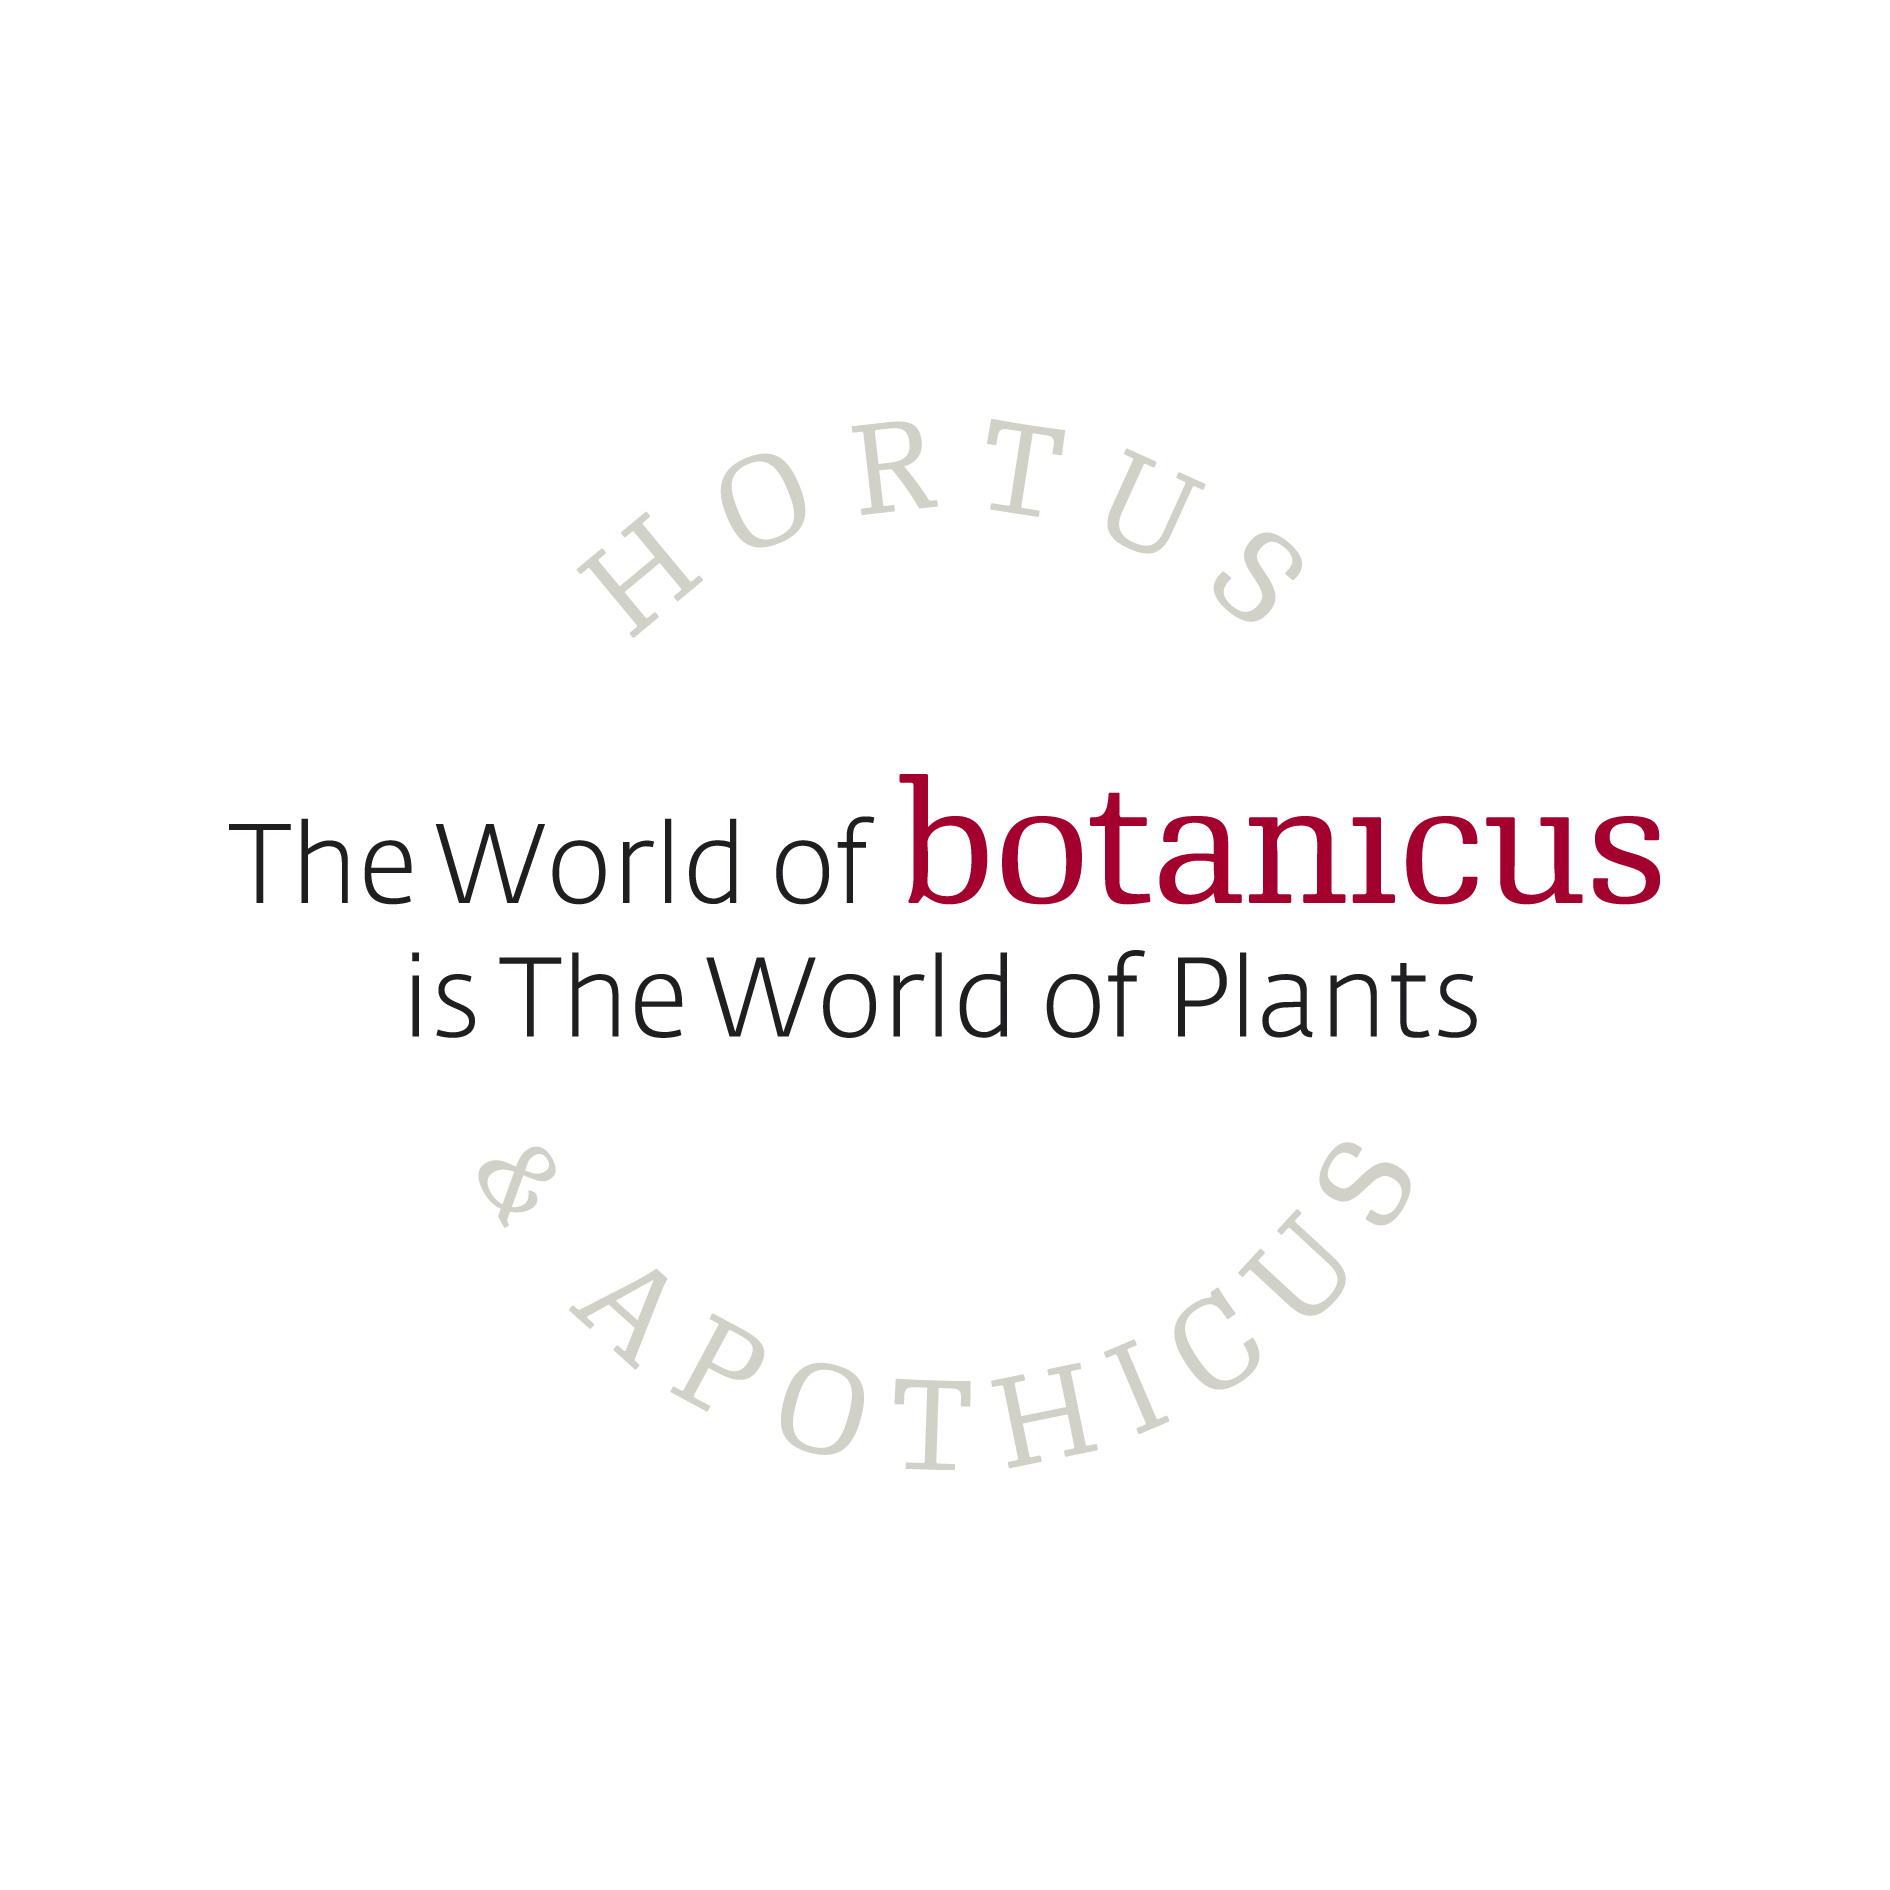 Botanicus Takes Pride in Being Organic